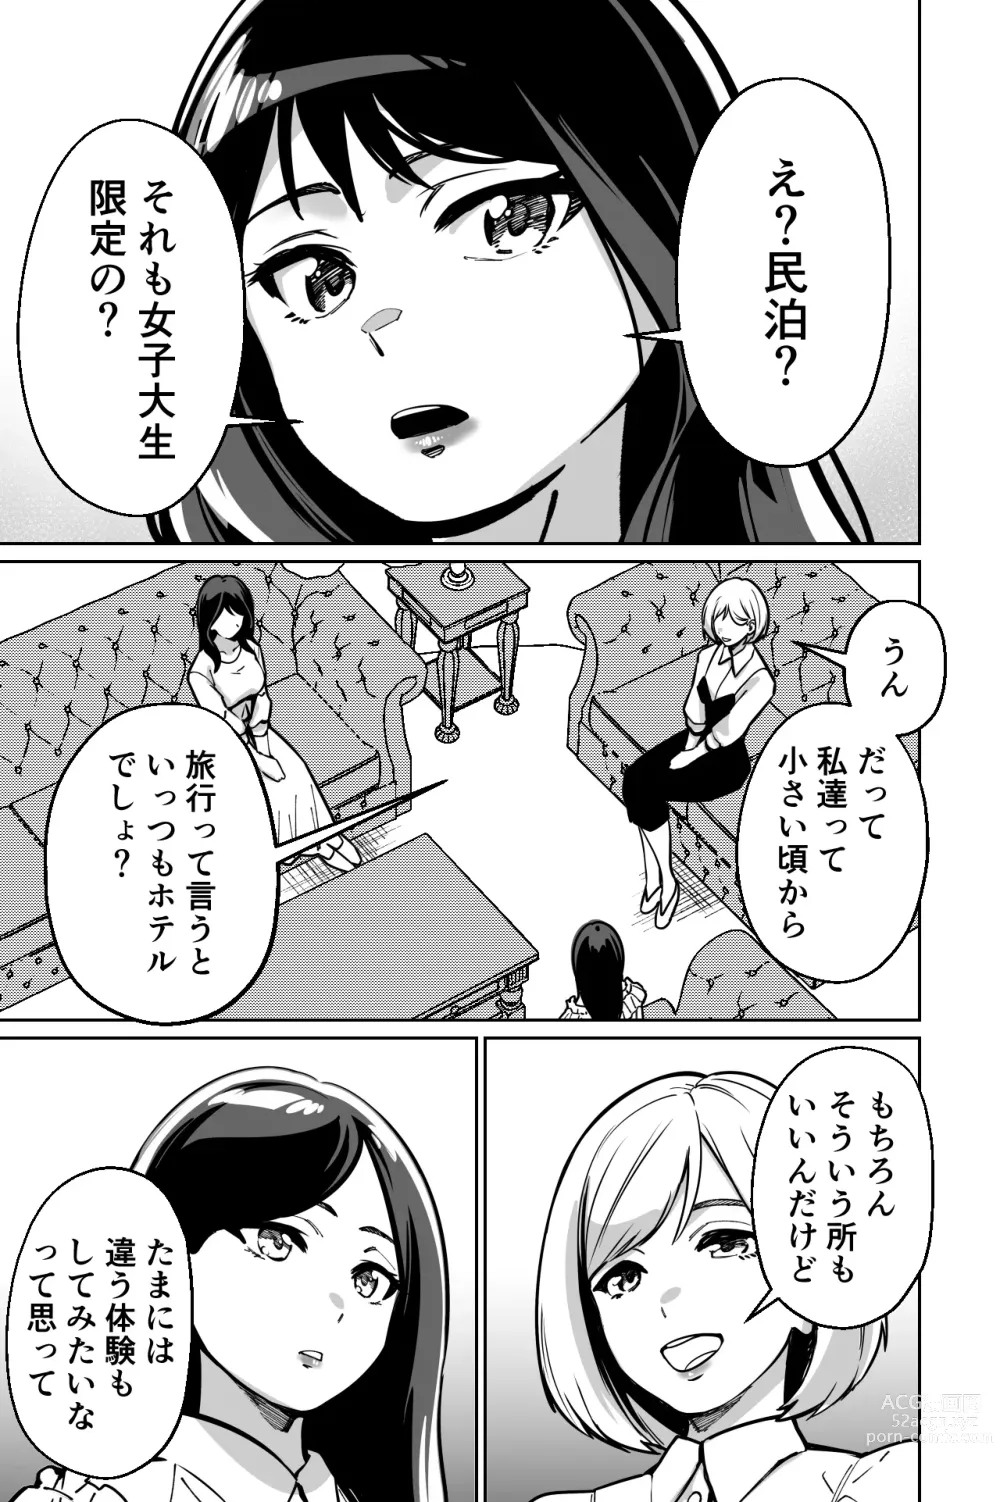 Page 5 of doujinshi Minpaku ~Ojou-sama-tachi wa Minpaku Keieisha no Wana ni Ochiru~